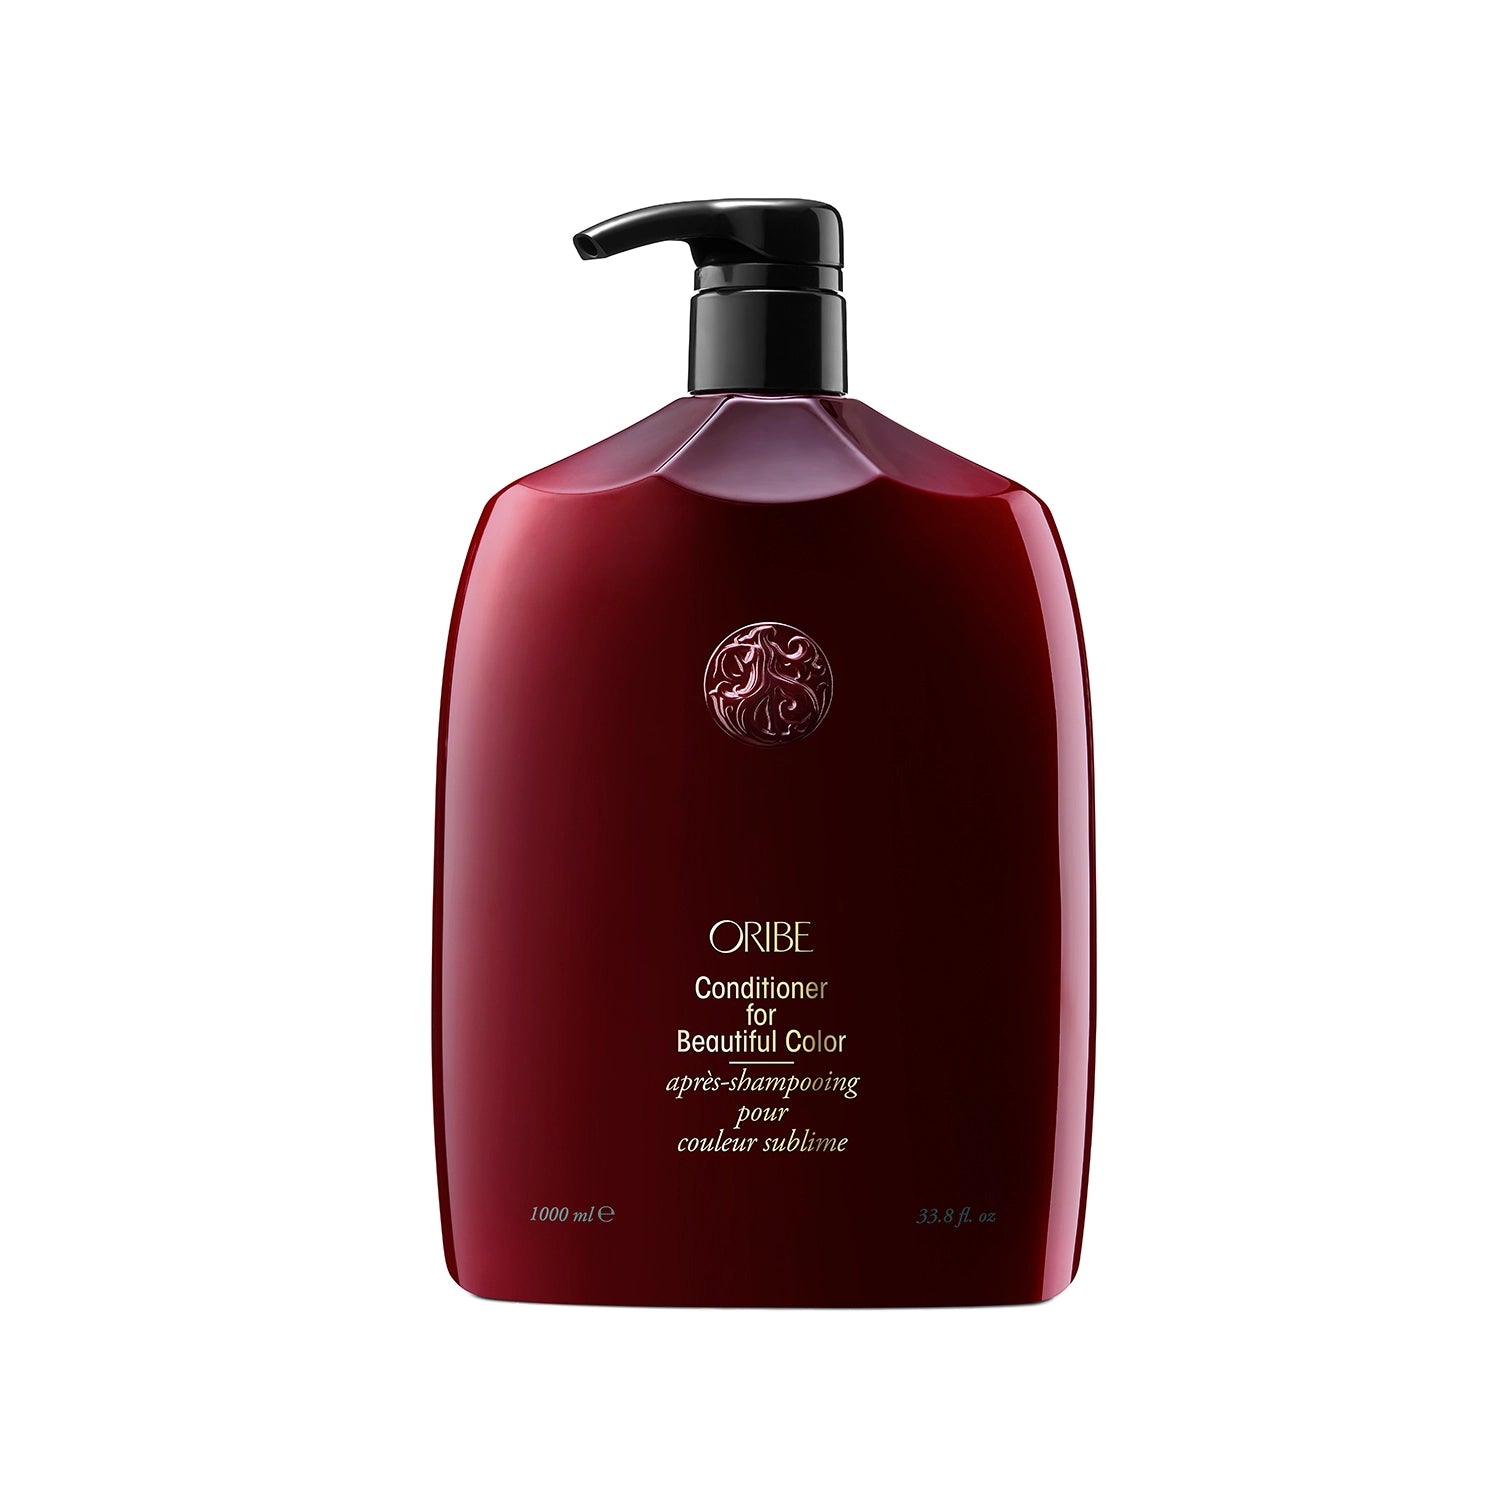 ORIBE - Après-shampooing pour une couleur sublime